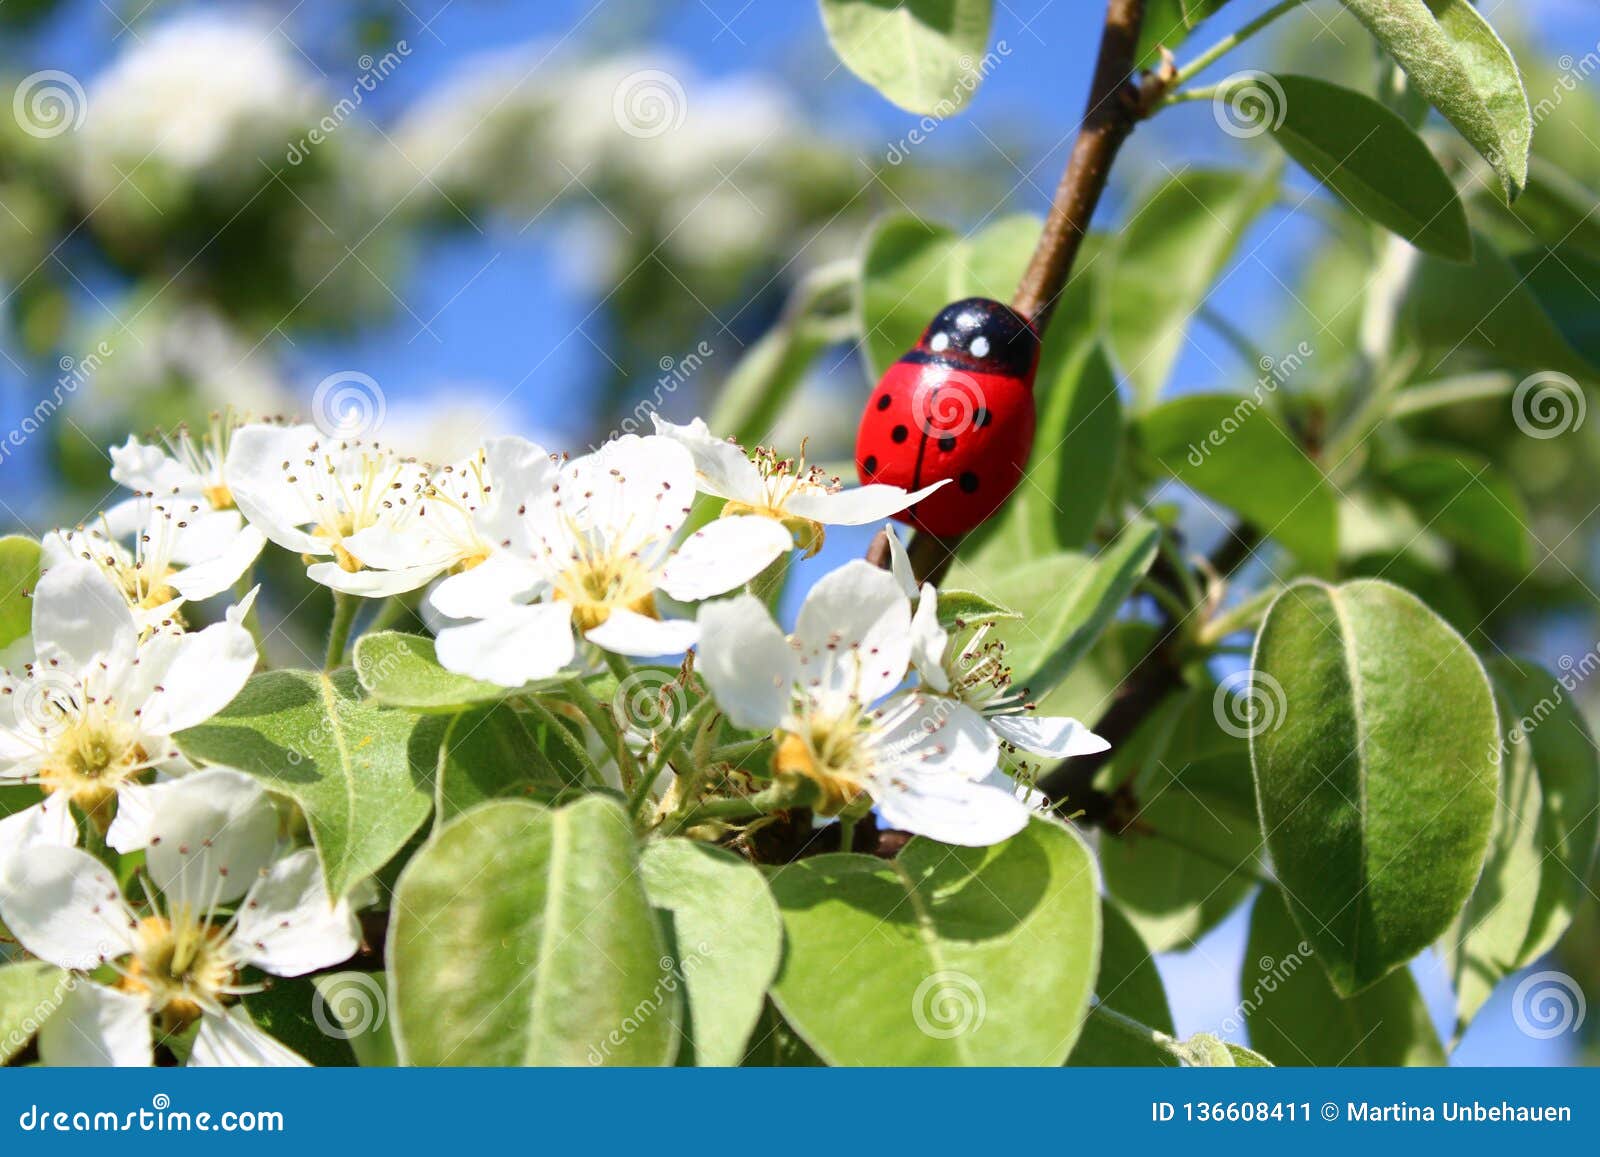 Marienkäfer in einem blühenden Vogelbaum. Das Bild zeigt einen hölzernen Marienkäfer in einem blühenden Birnenbaum